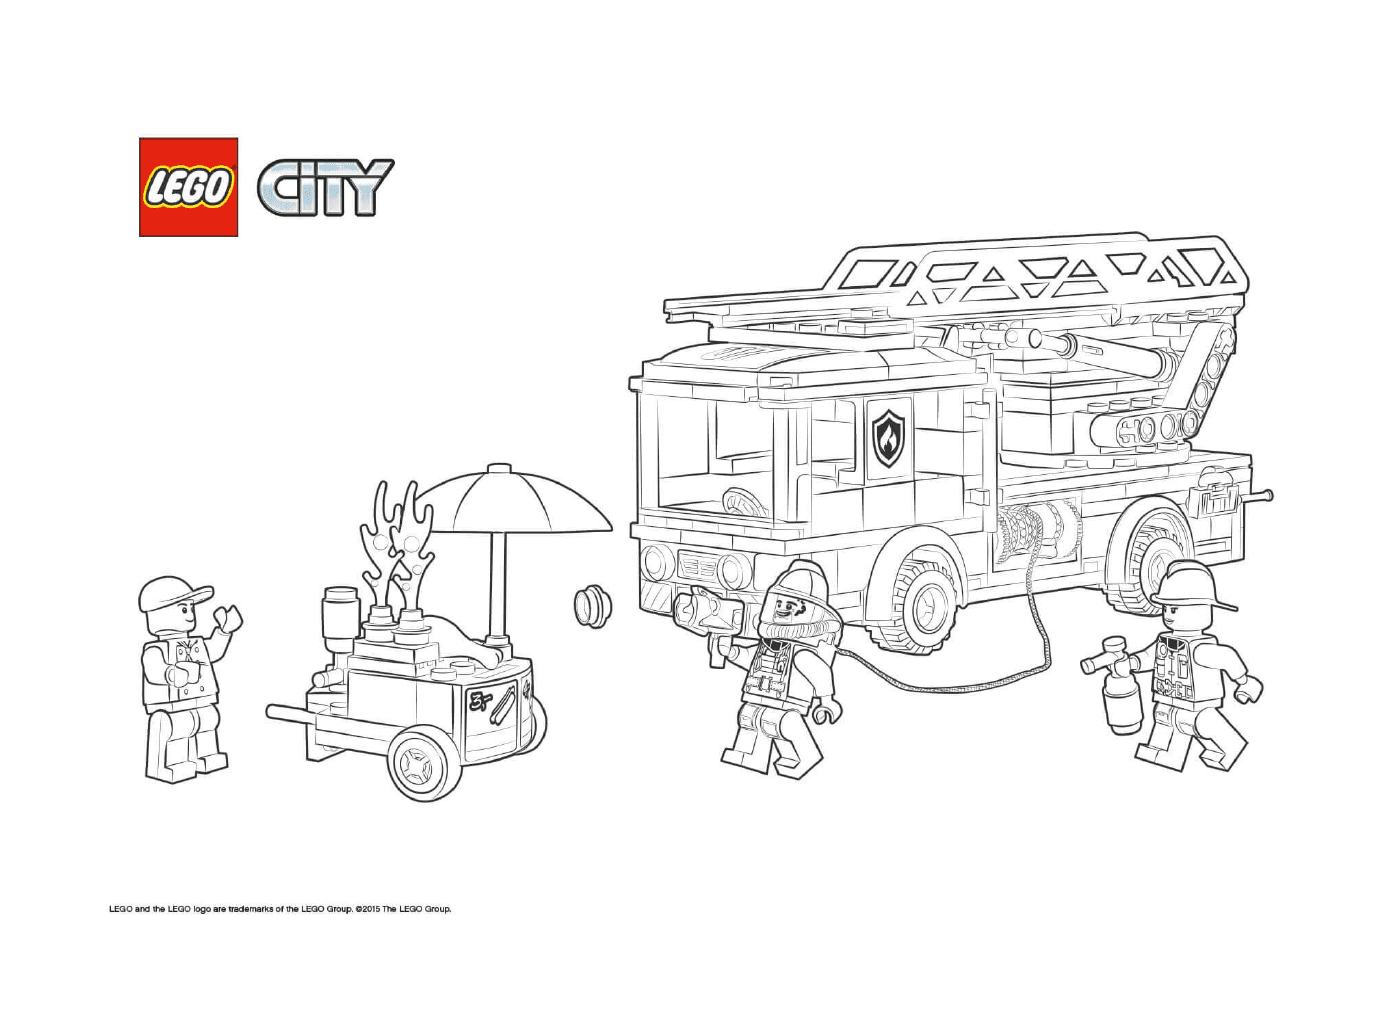  Departamento de Bombeiros da Cidade Lego 